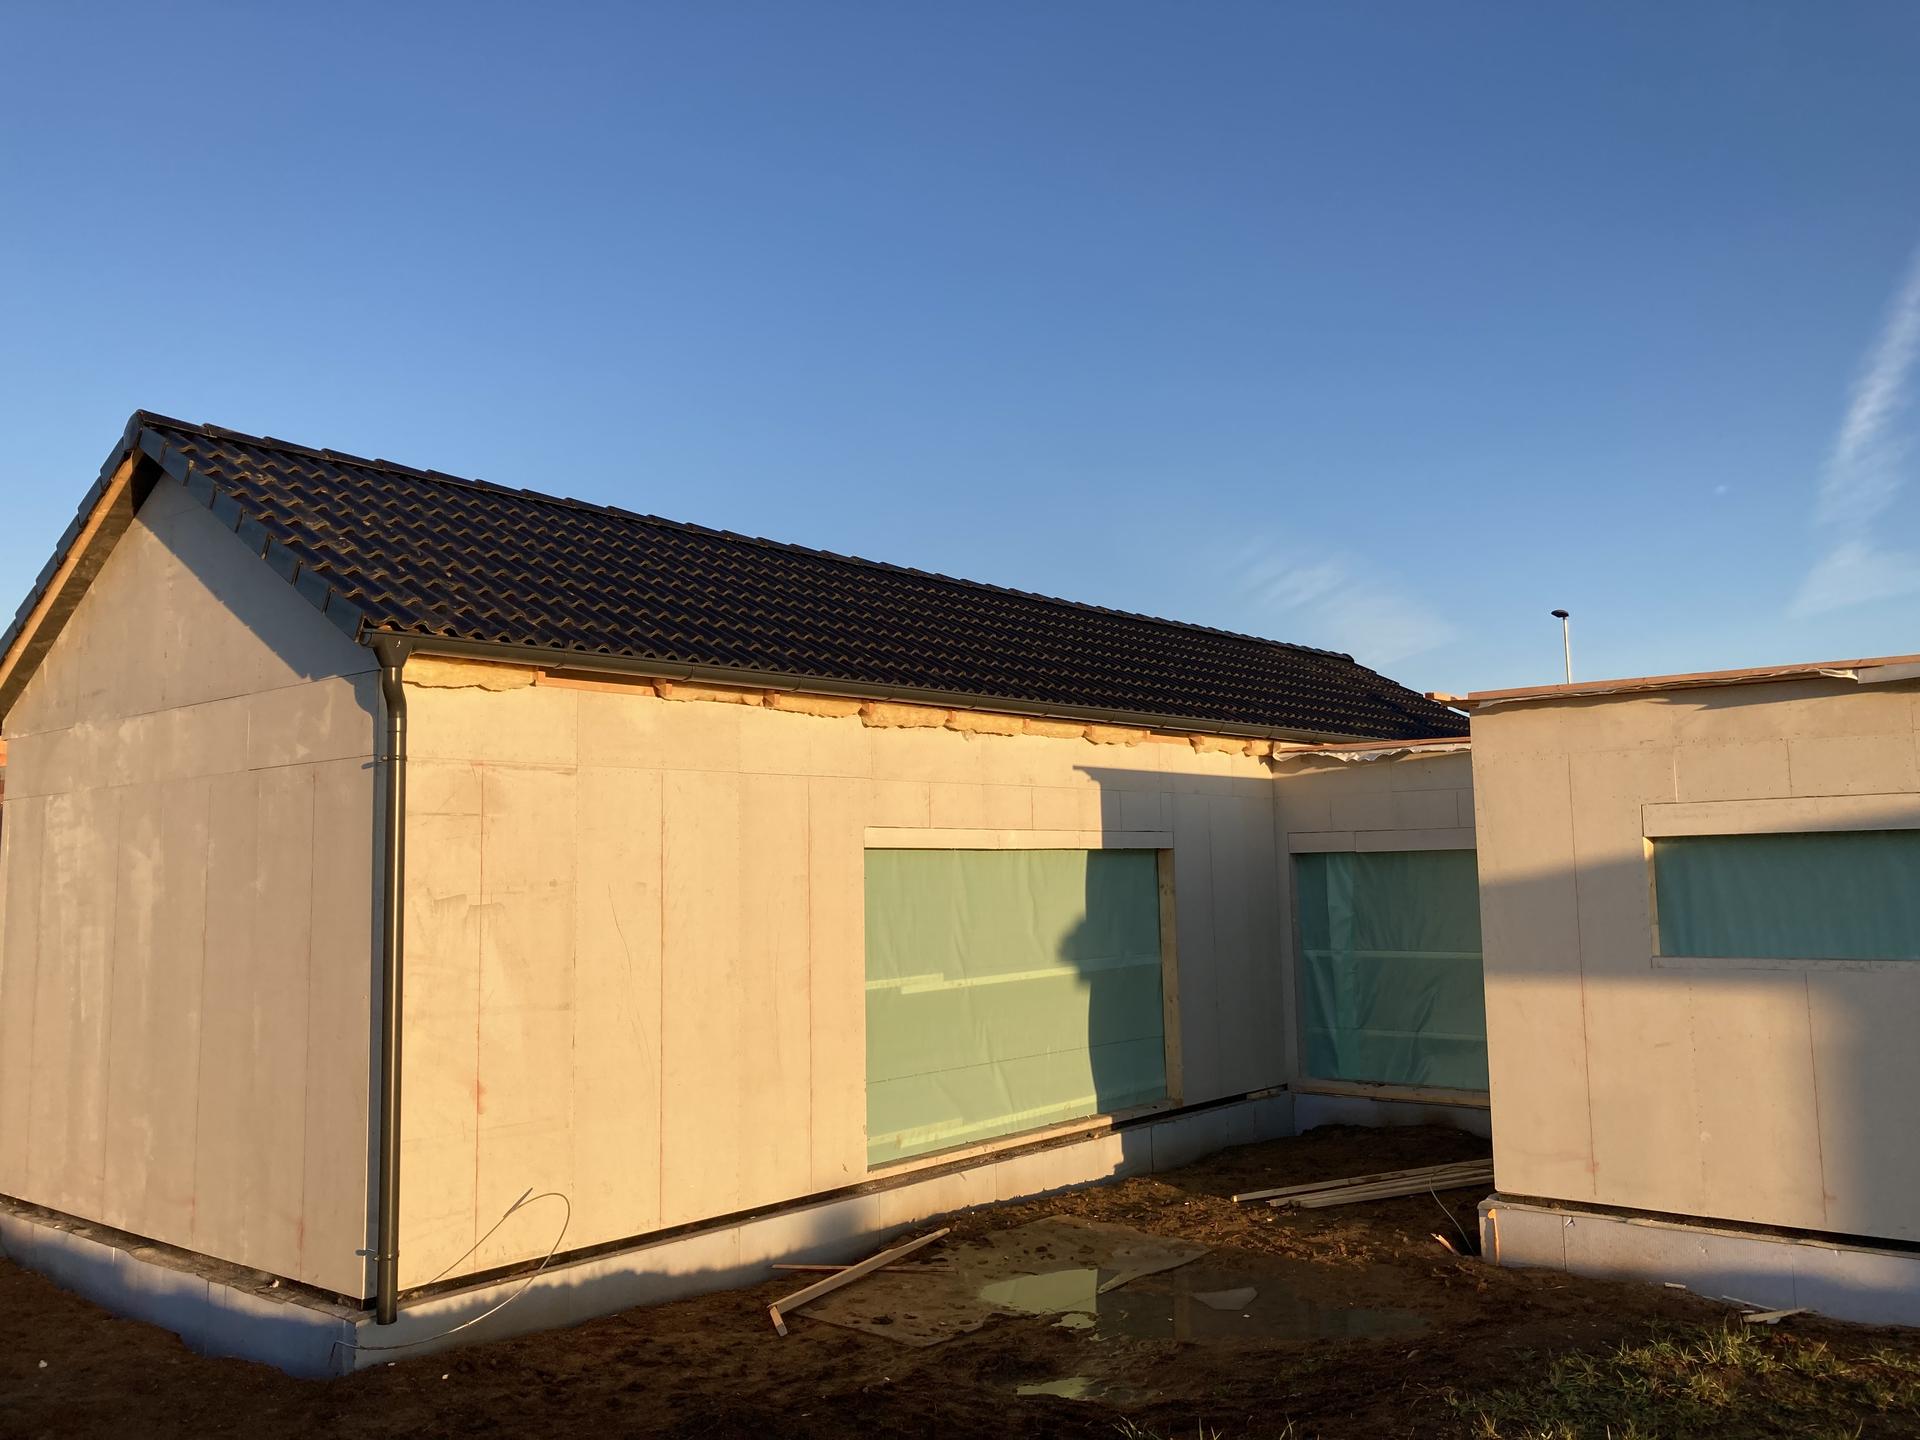 Stavba našeho domku - 17.12.2021 Sedlová střecha hotová, mezi svátky se jen dodělá komín